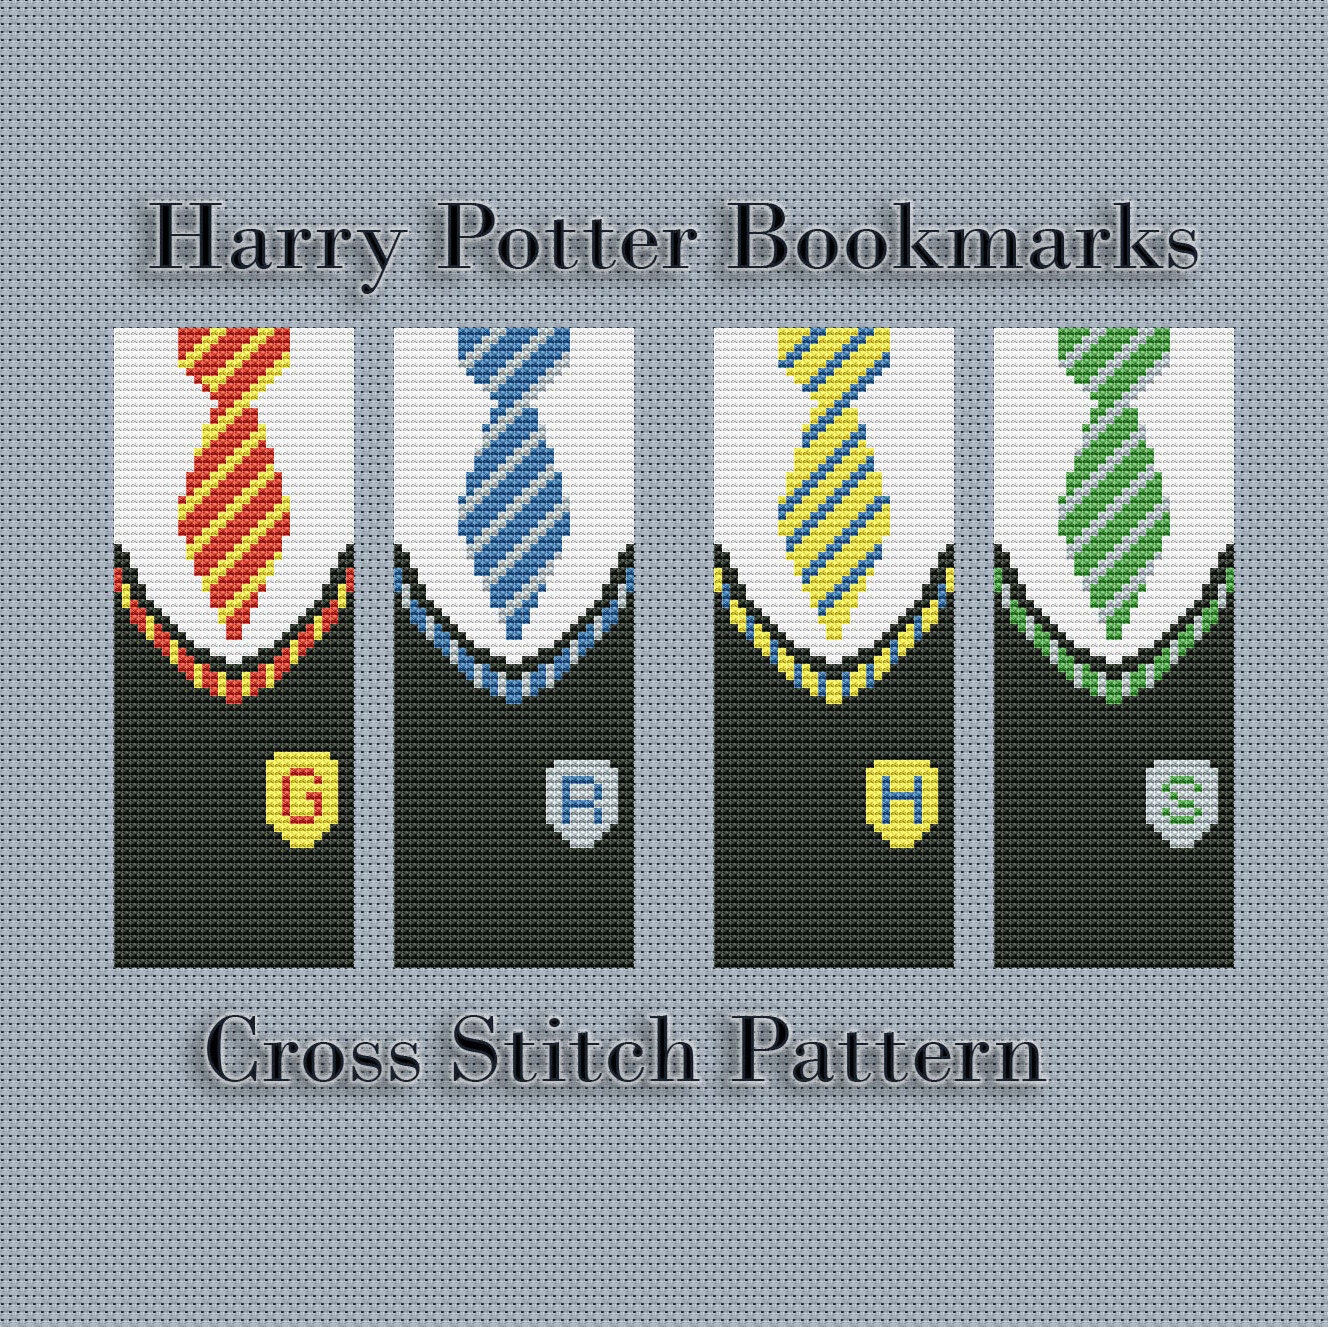 Harry Potter bookmarks cross stitch pattern pdf Harry Potter